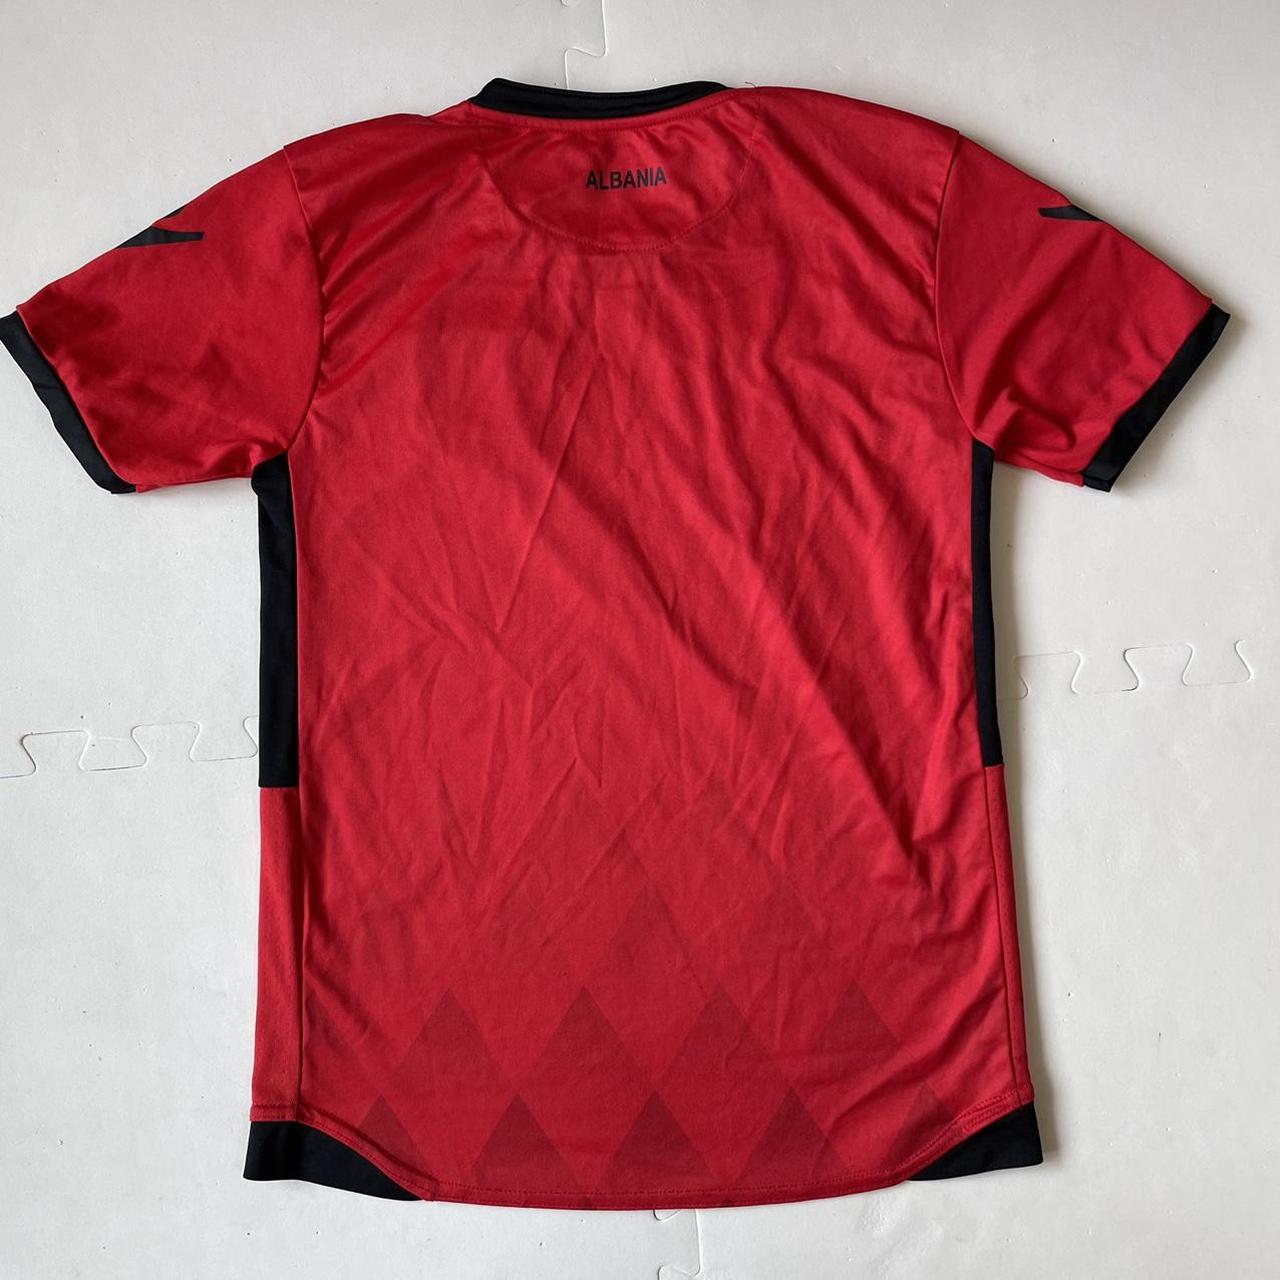 Unbranded Red T-shirt | Depop